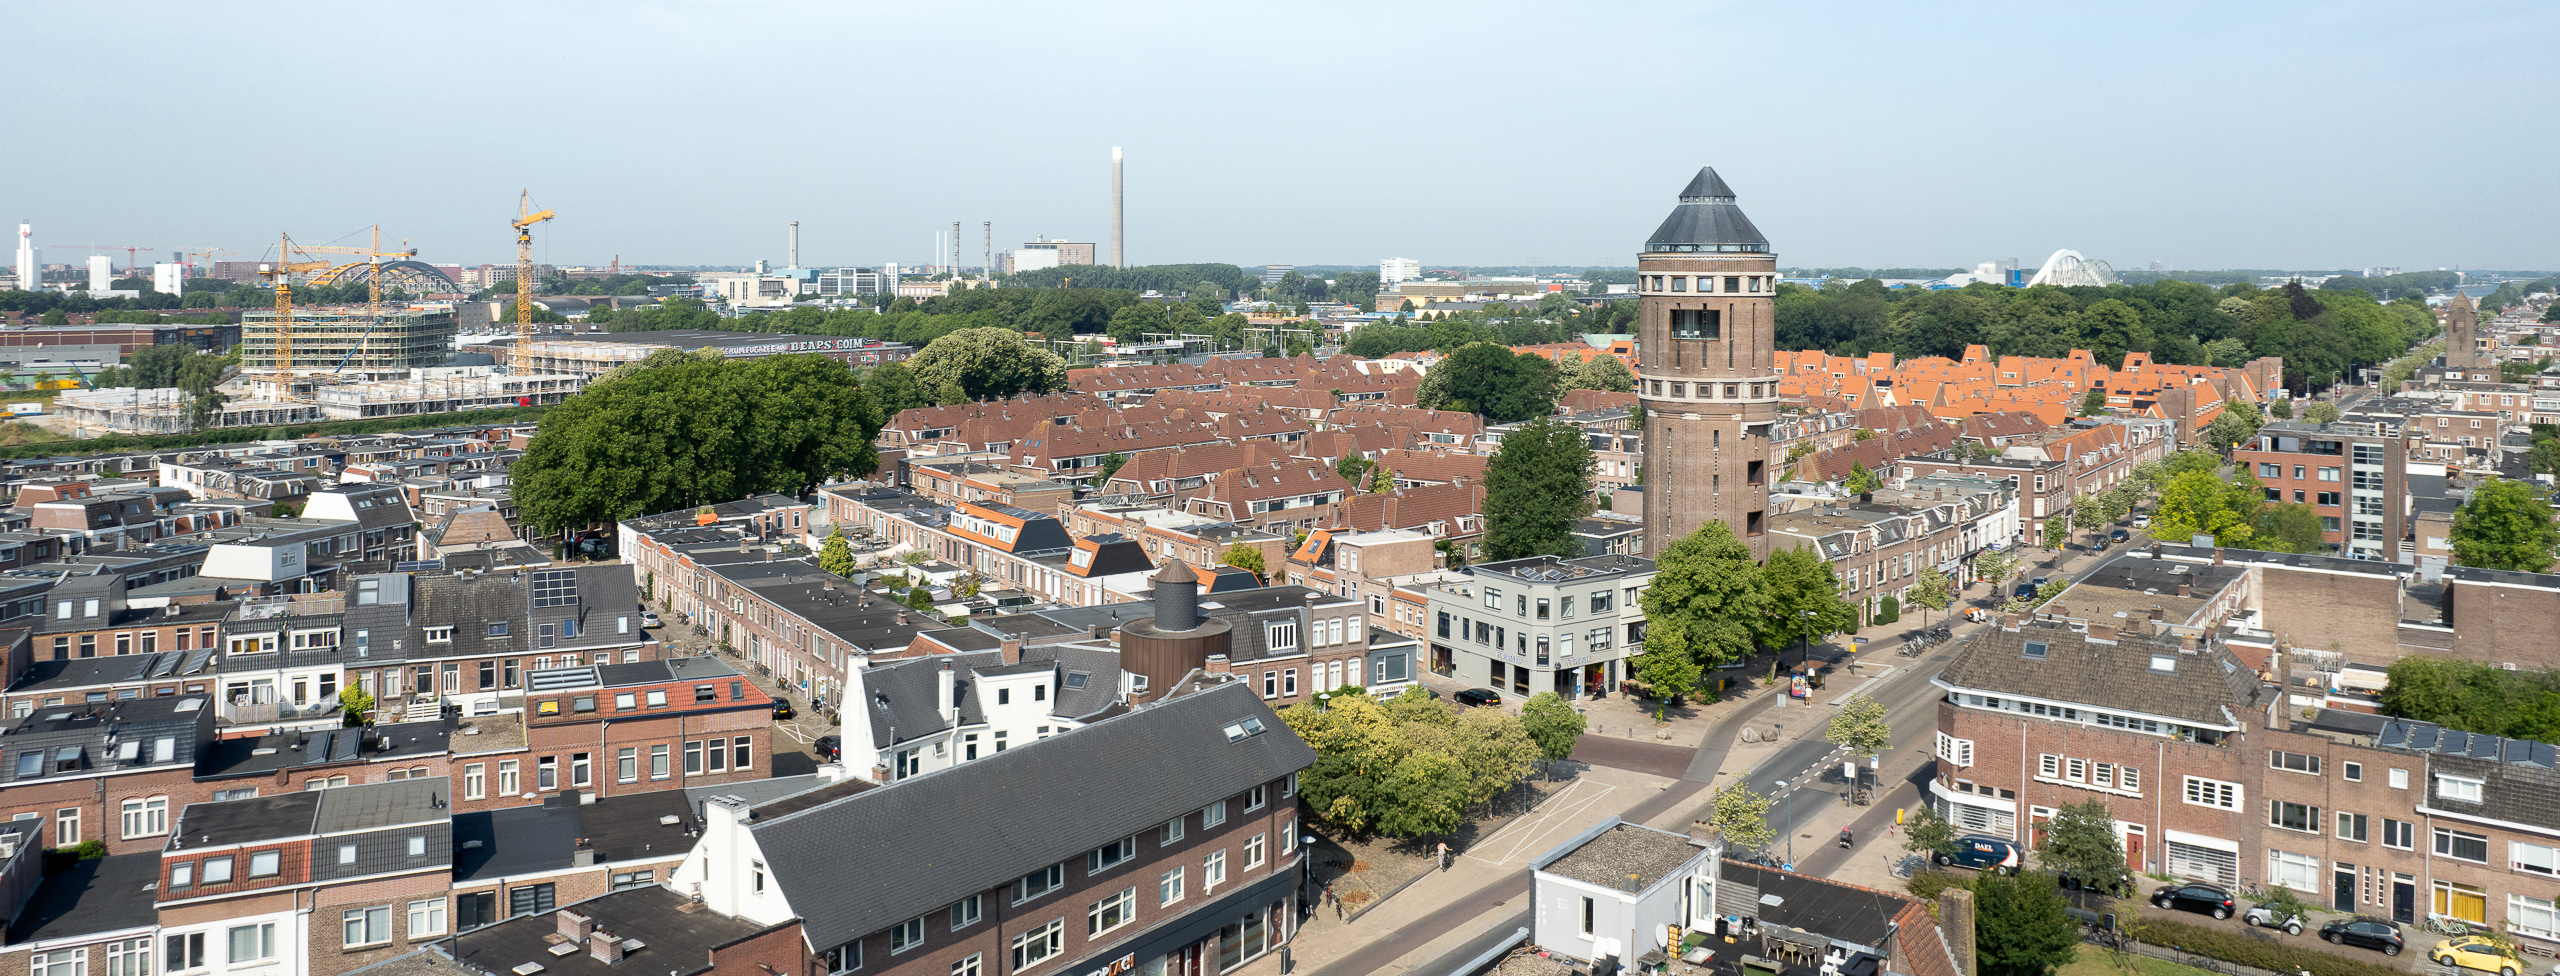 Watertoren Utrecht | R & R Bouw